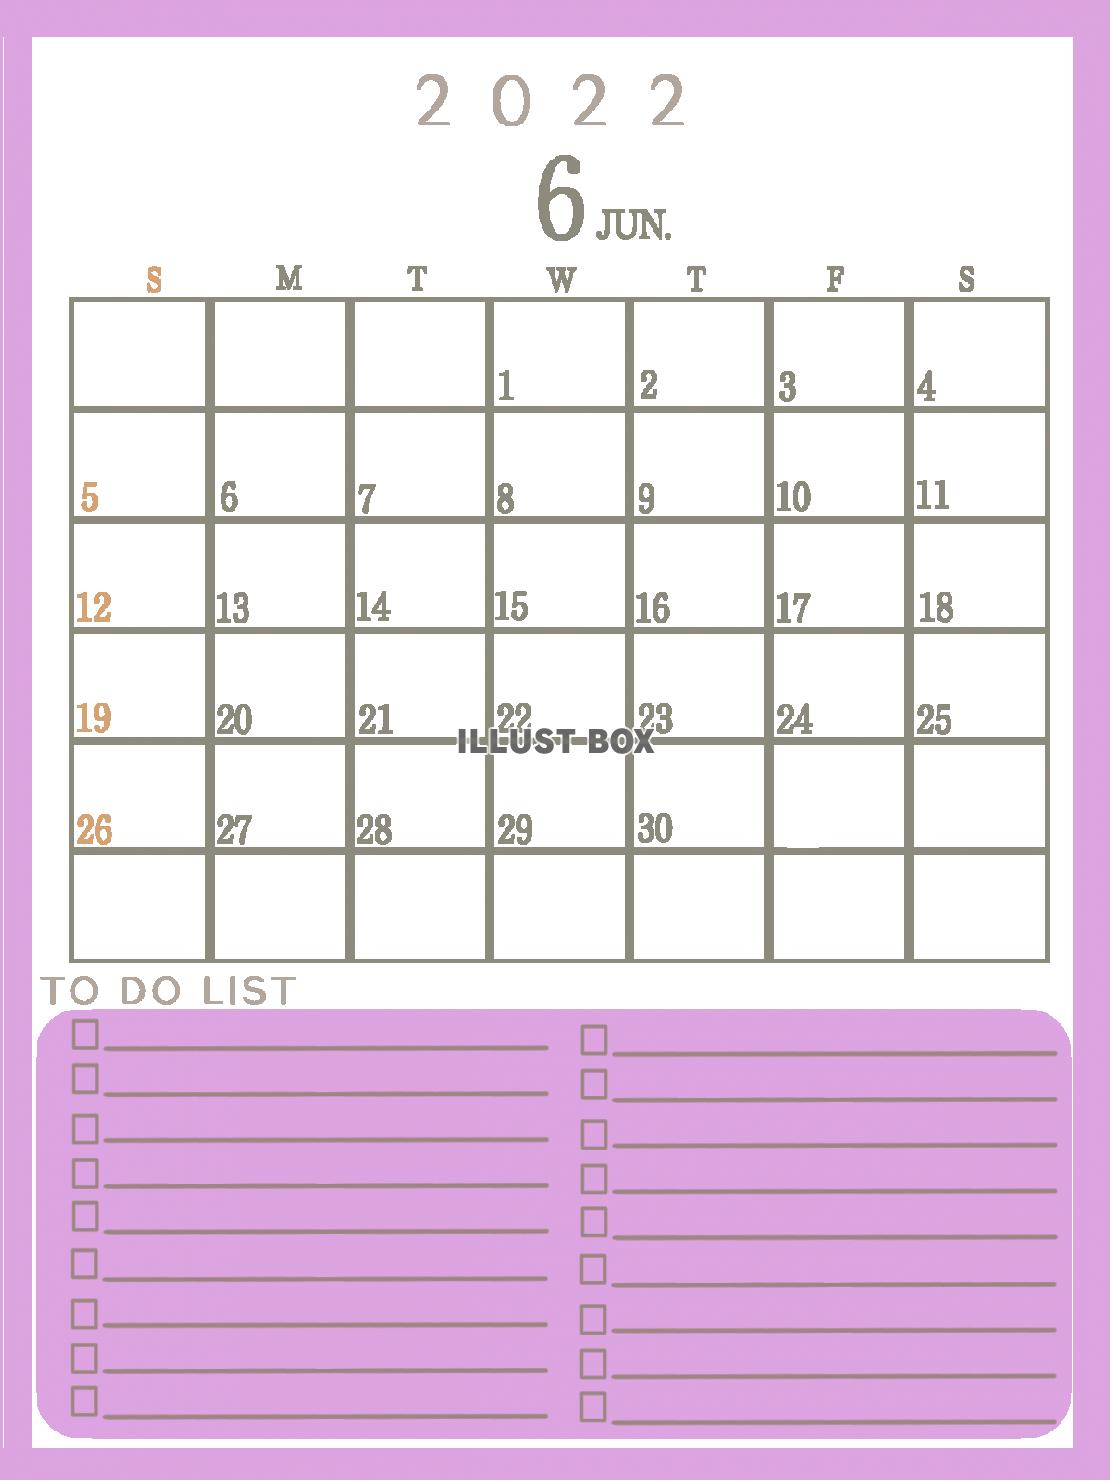 ２０２２年　TODOリストのあるシンプルなカレンダー（６月）